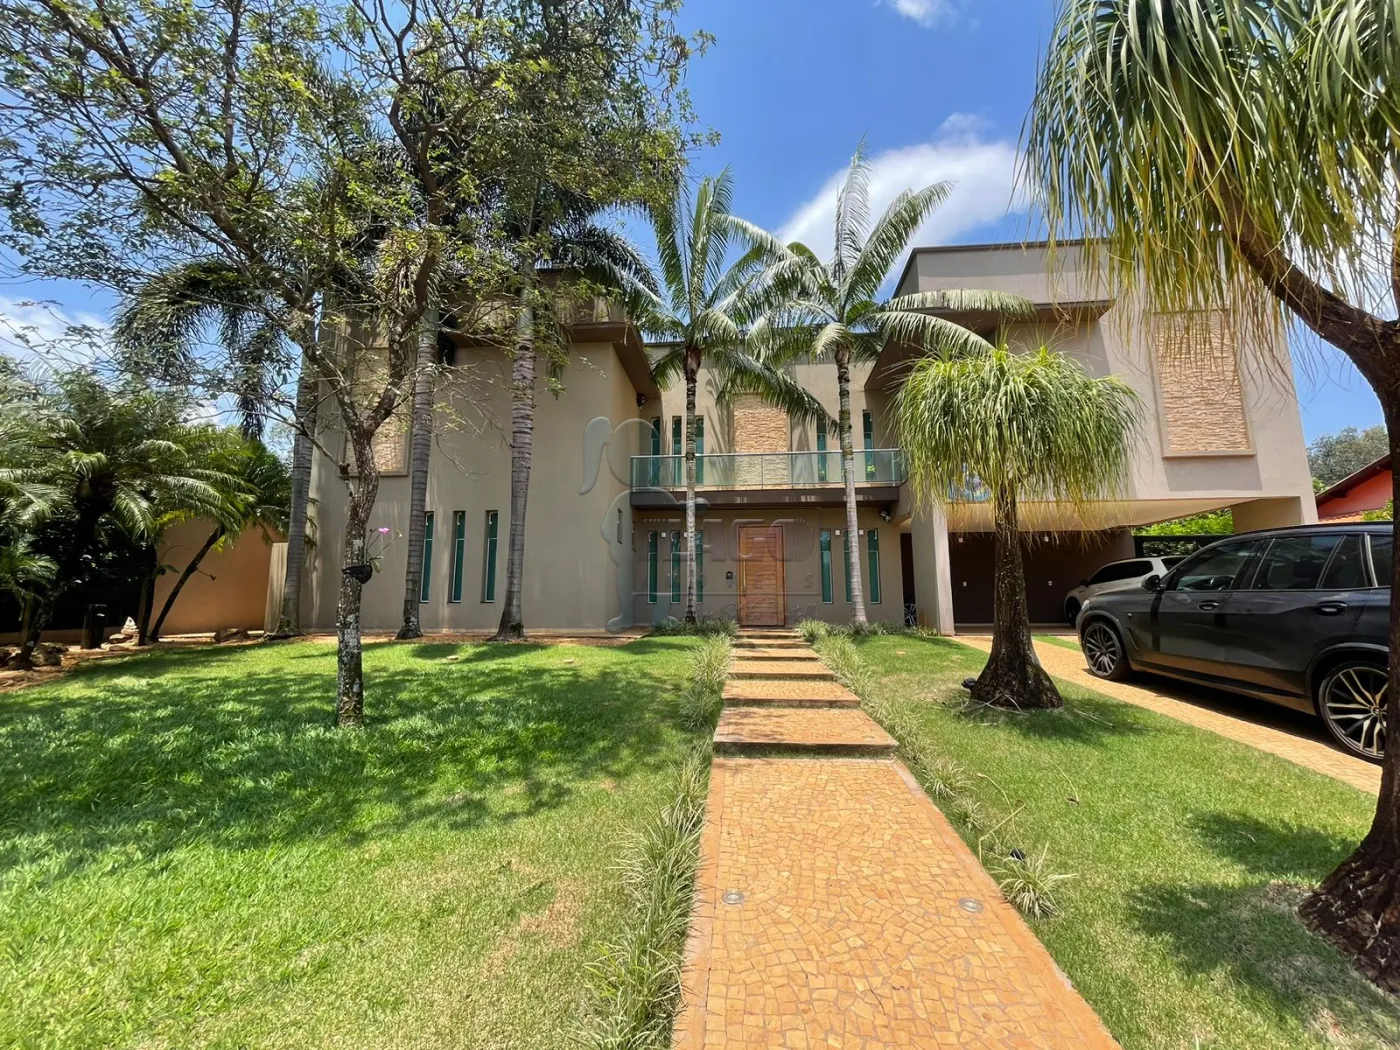 Comprar Casas / Condomínio em Jardinópolis R$ 2.900.000,00 - Foto 4